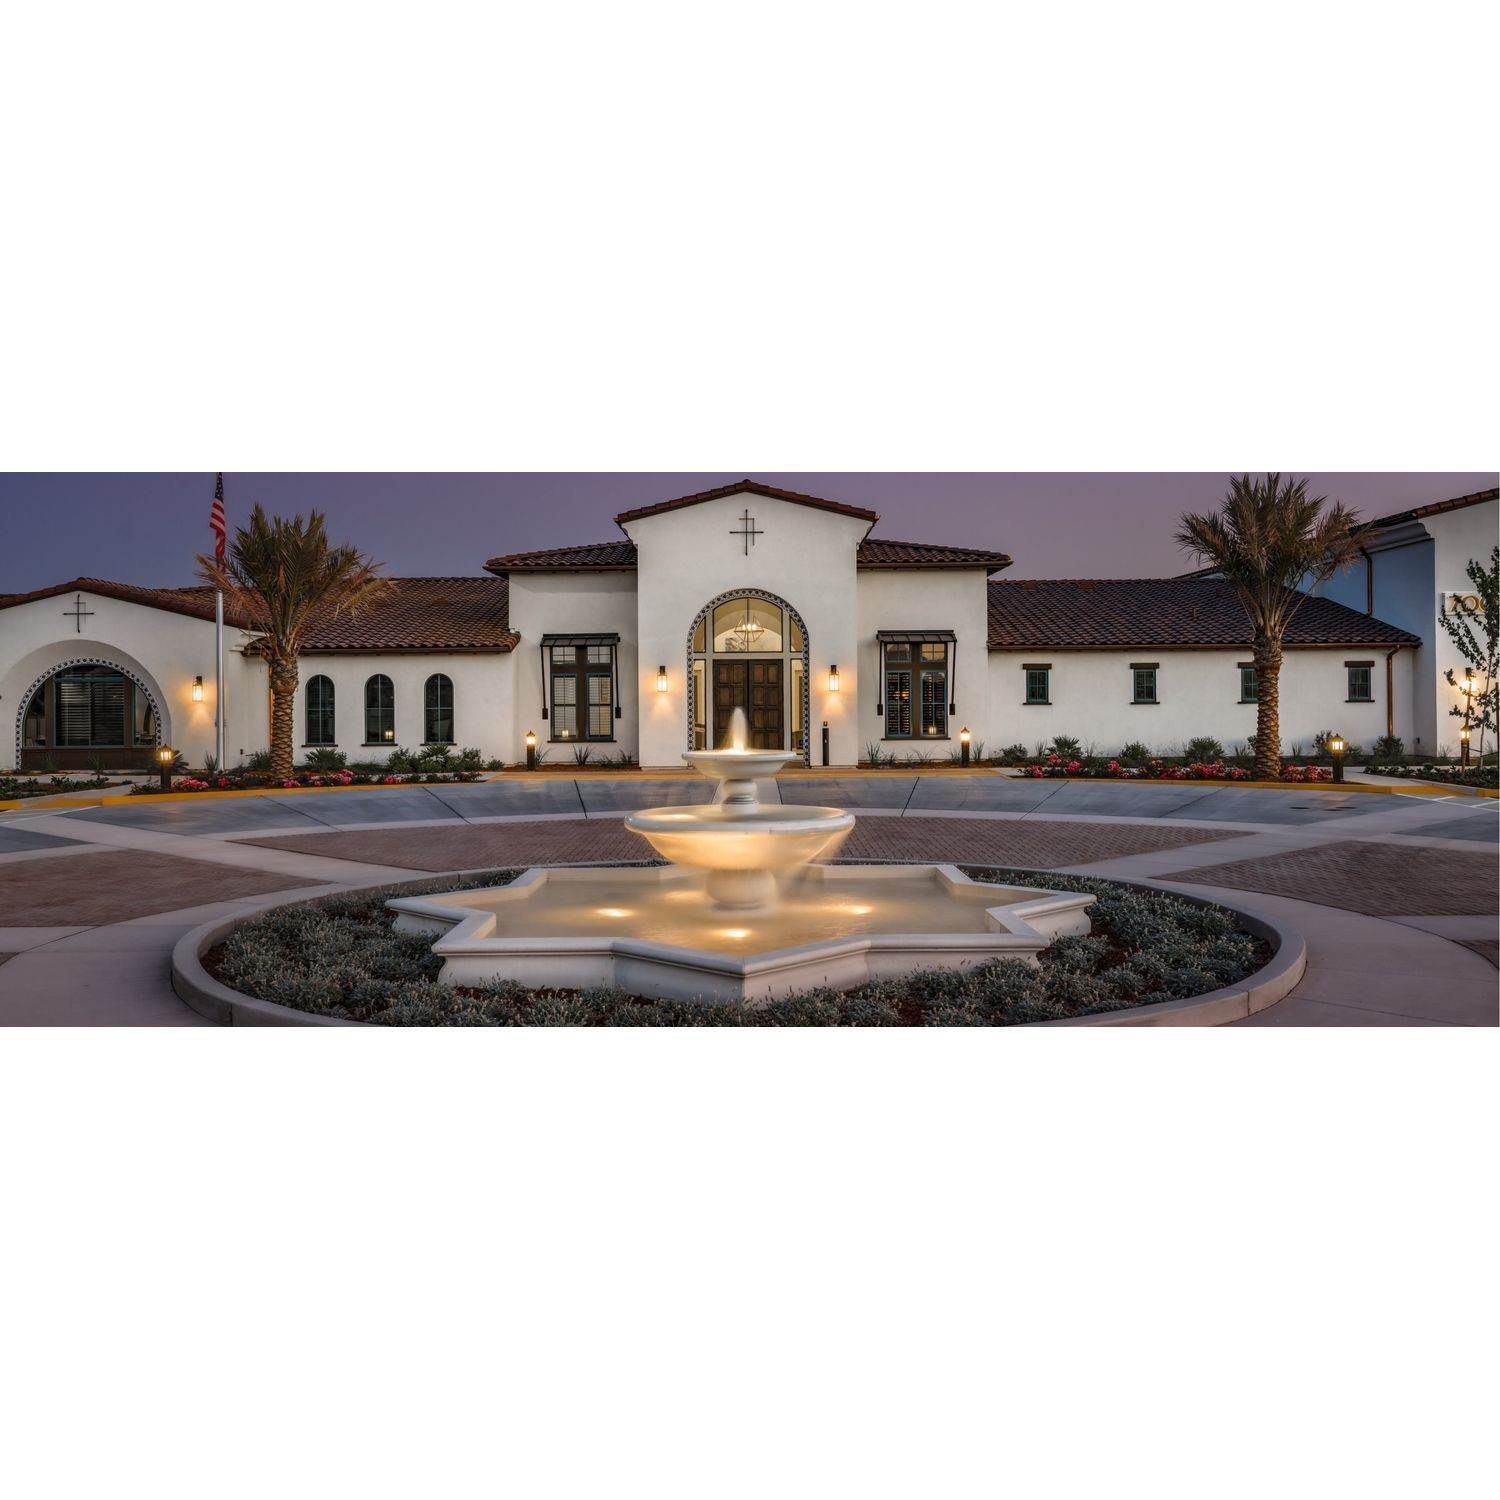 14. Mosaic Active Adult 55+ building at 4975 Del Mar Drive, El Dorado Hills, CA 95762